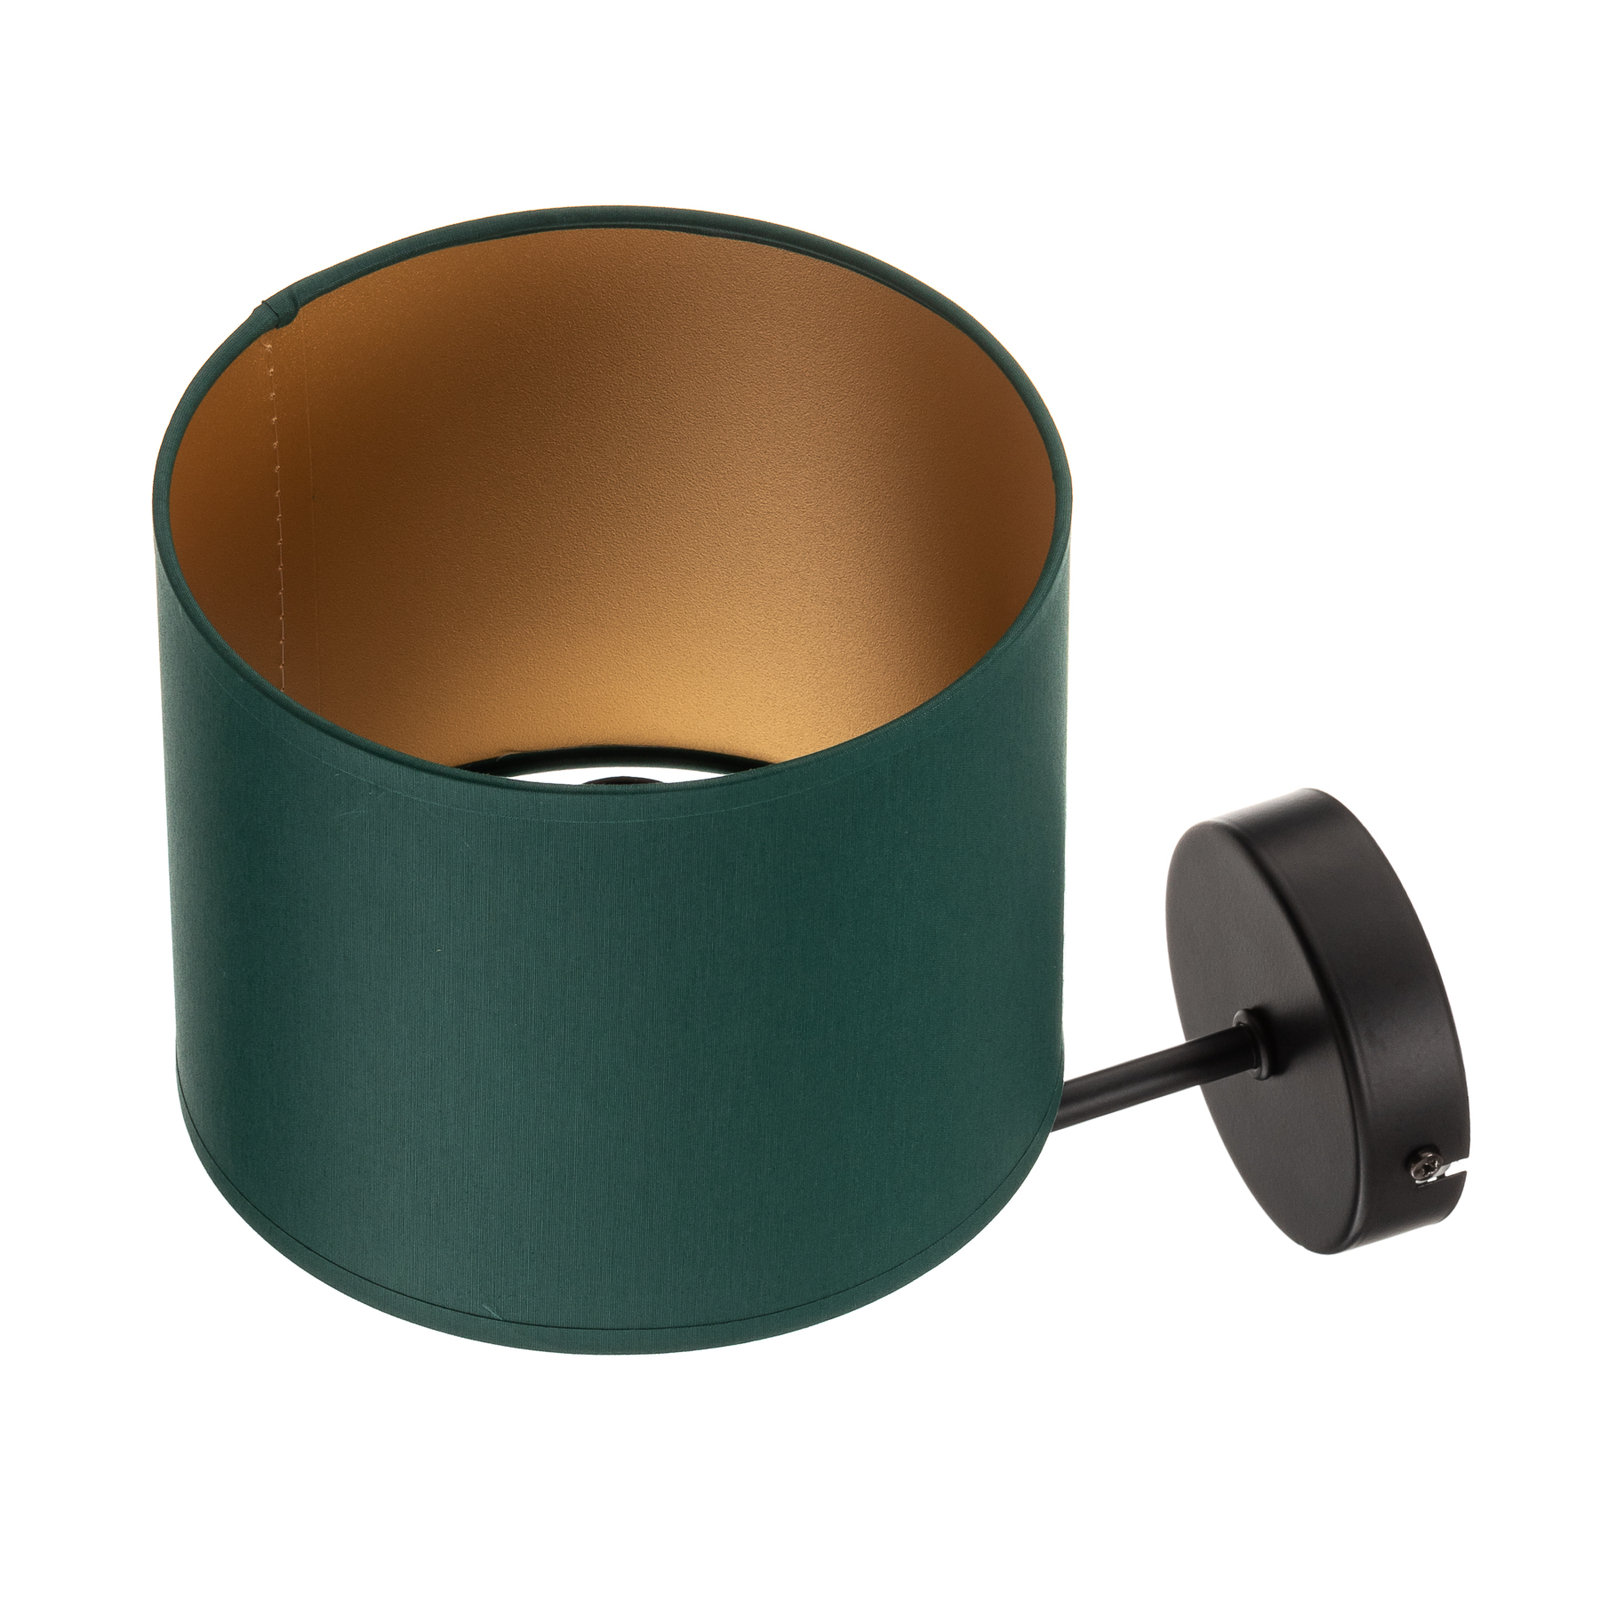 Wandlamp Soho, cilindervormig, groen/goud